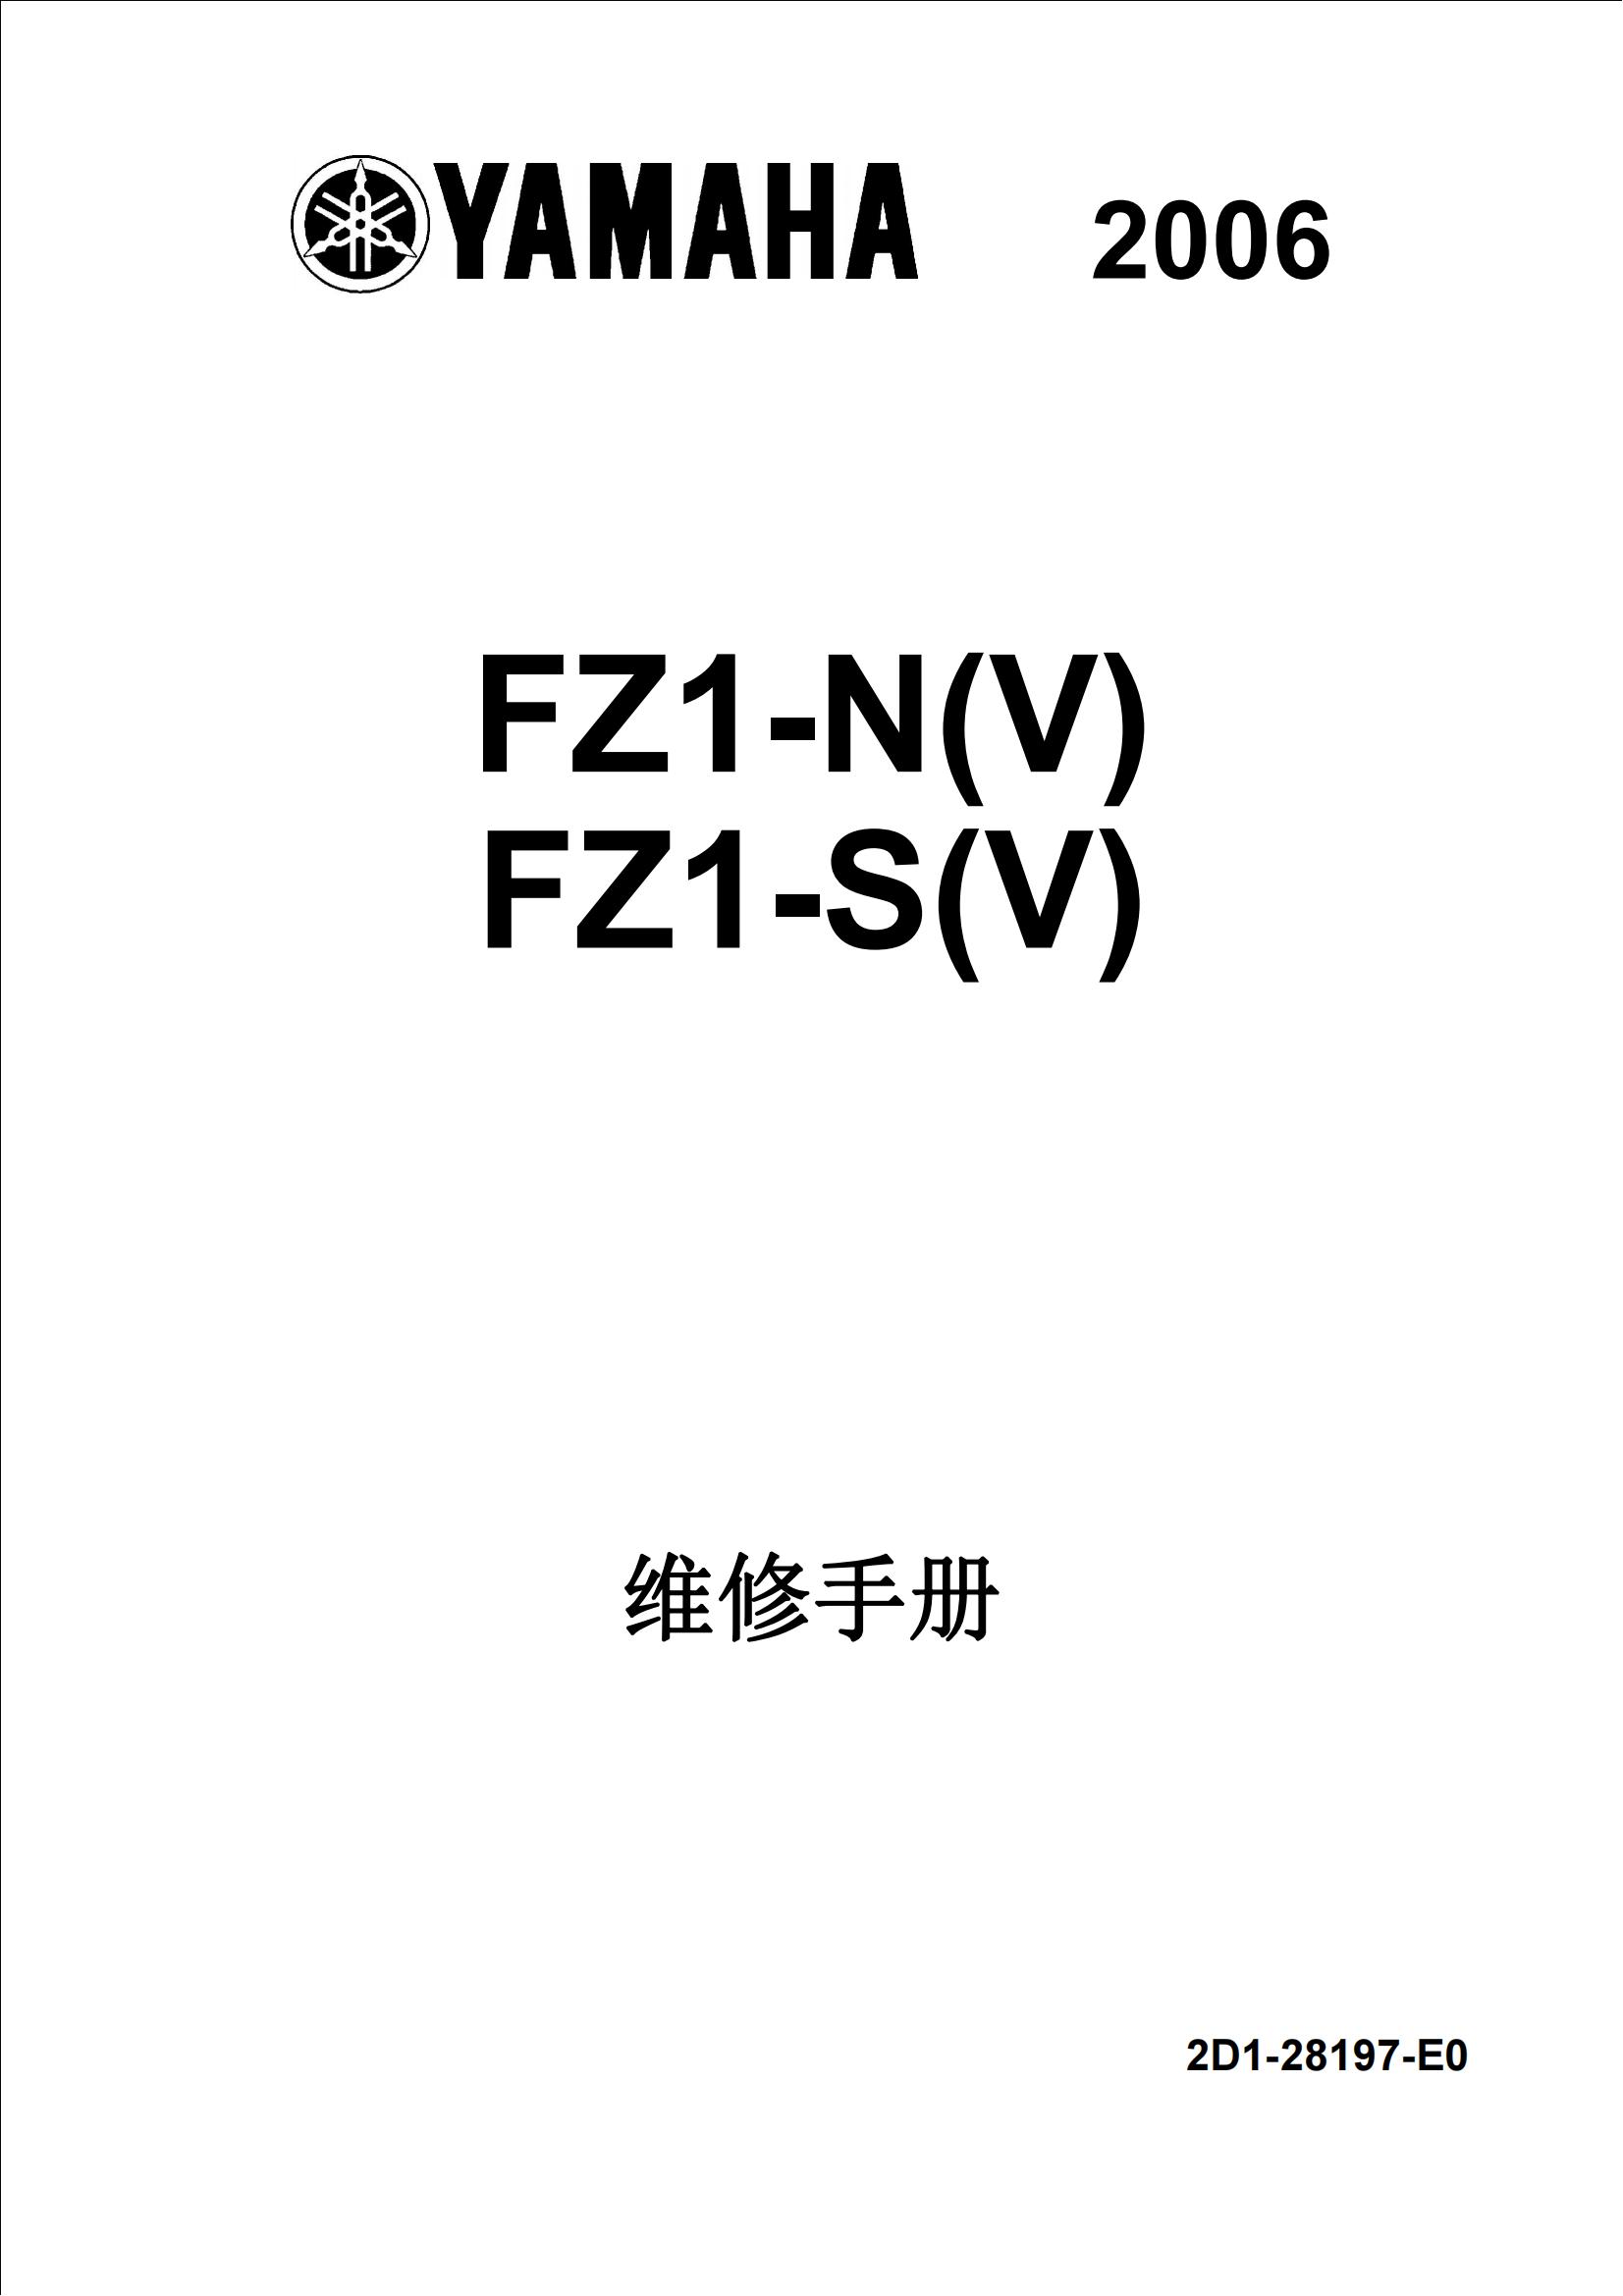 简体中文2006年雅马哈fz1n维修手册fz1s维修手册插图